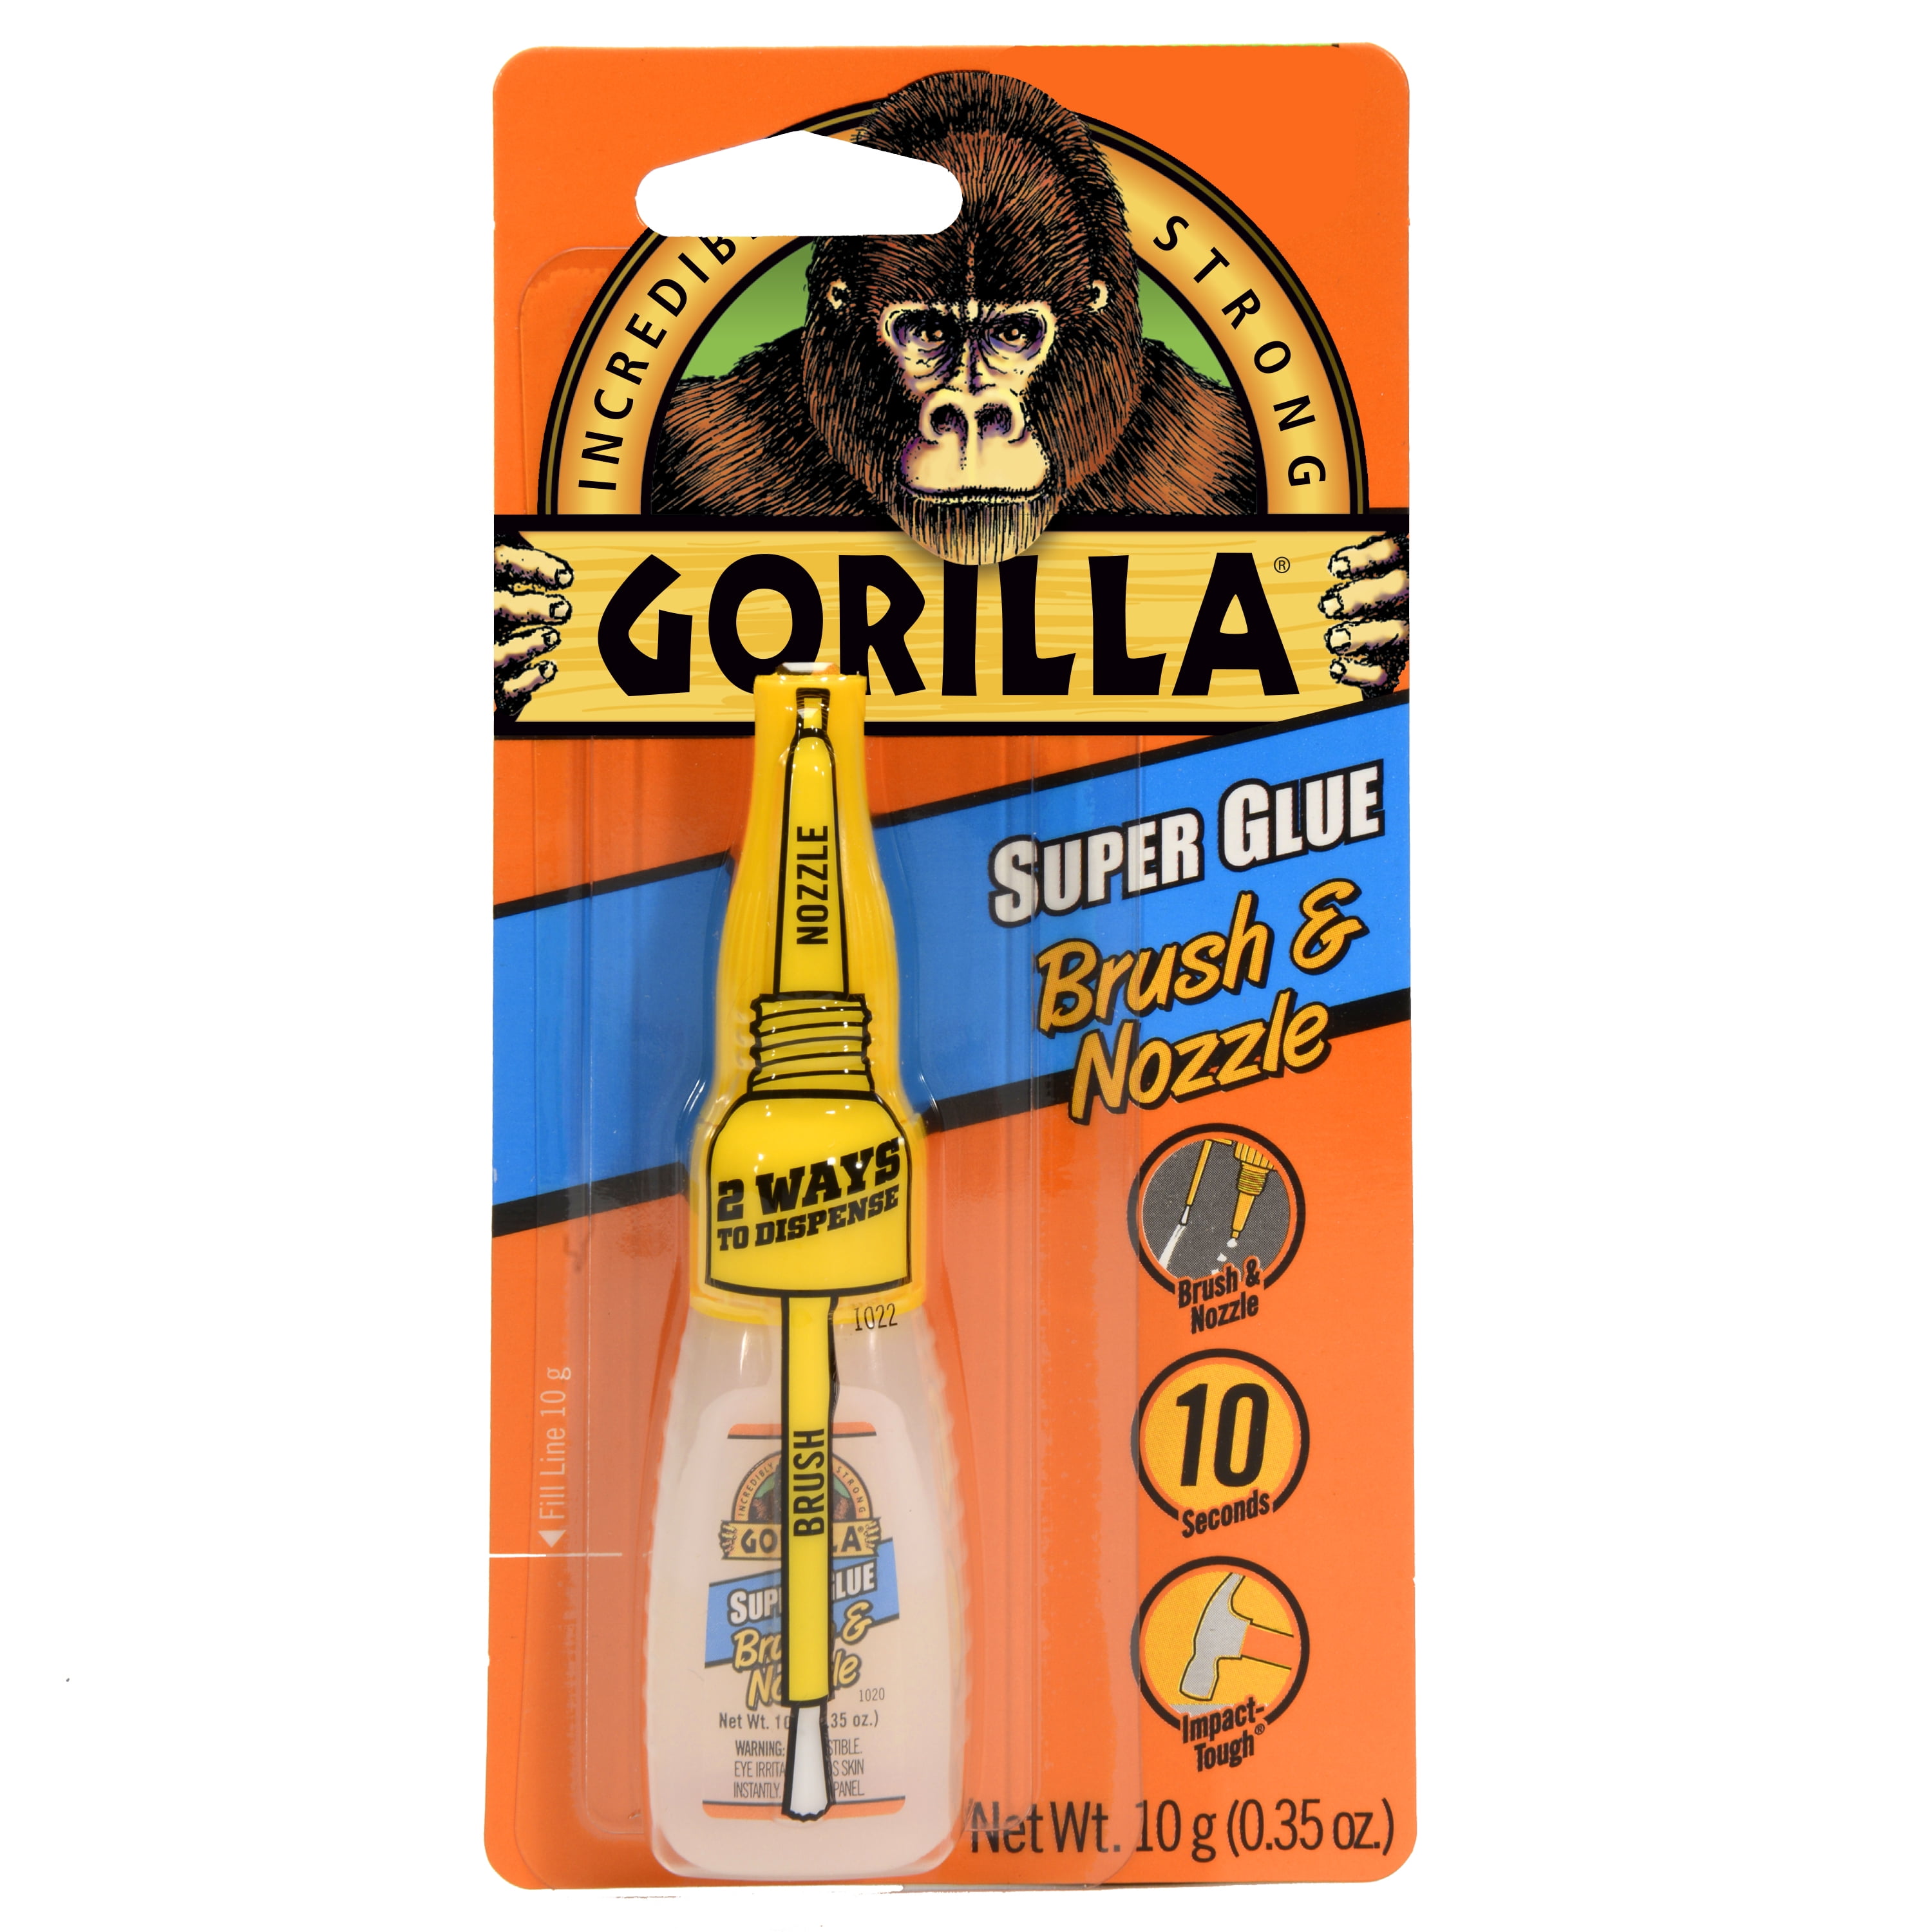 Gorilla Super Glue Brush & Nozzle,10g